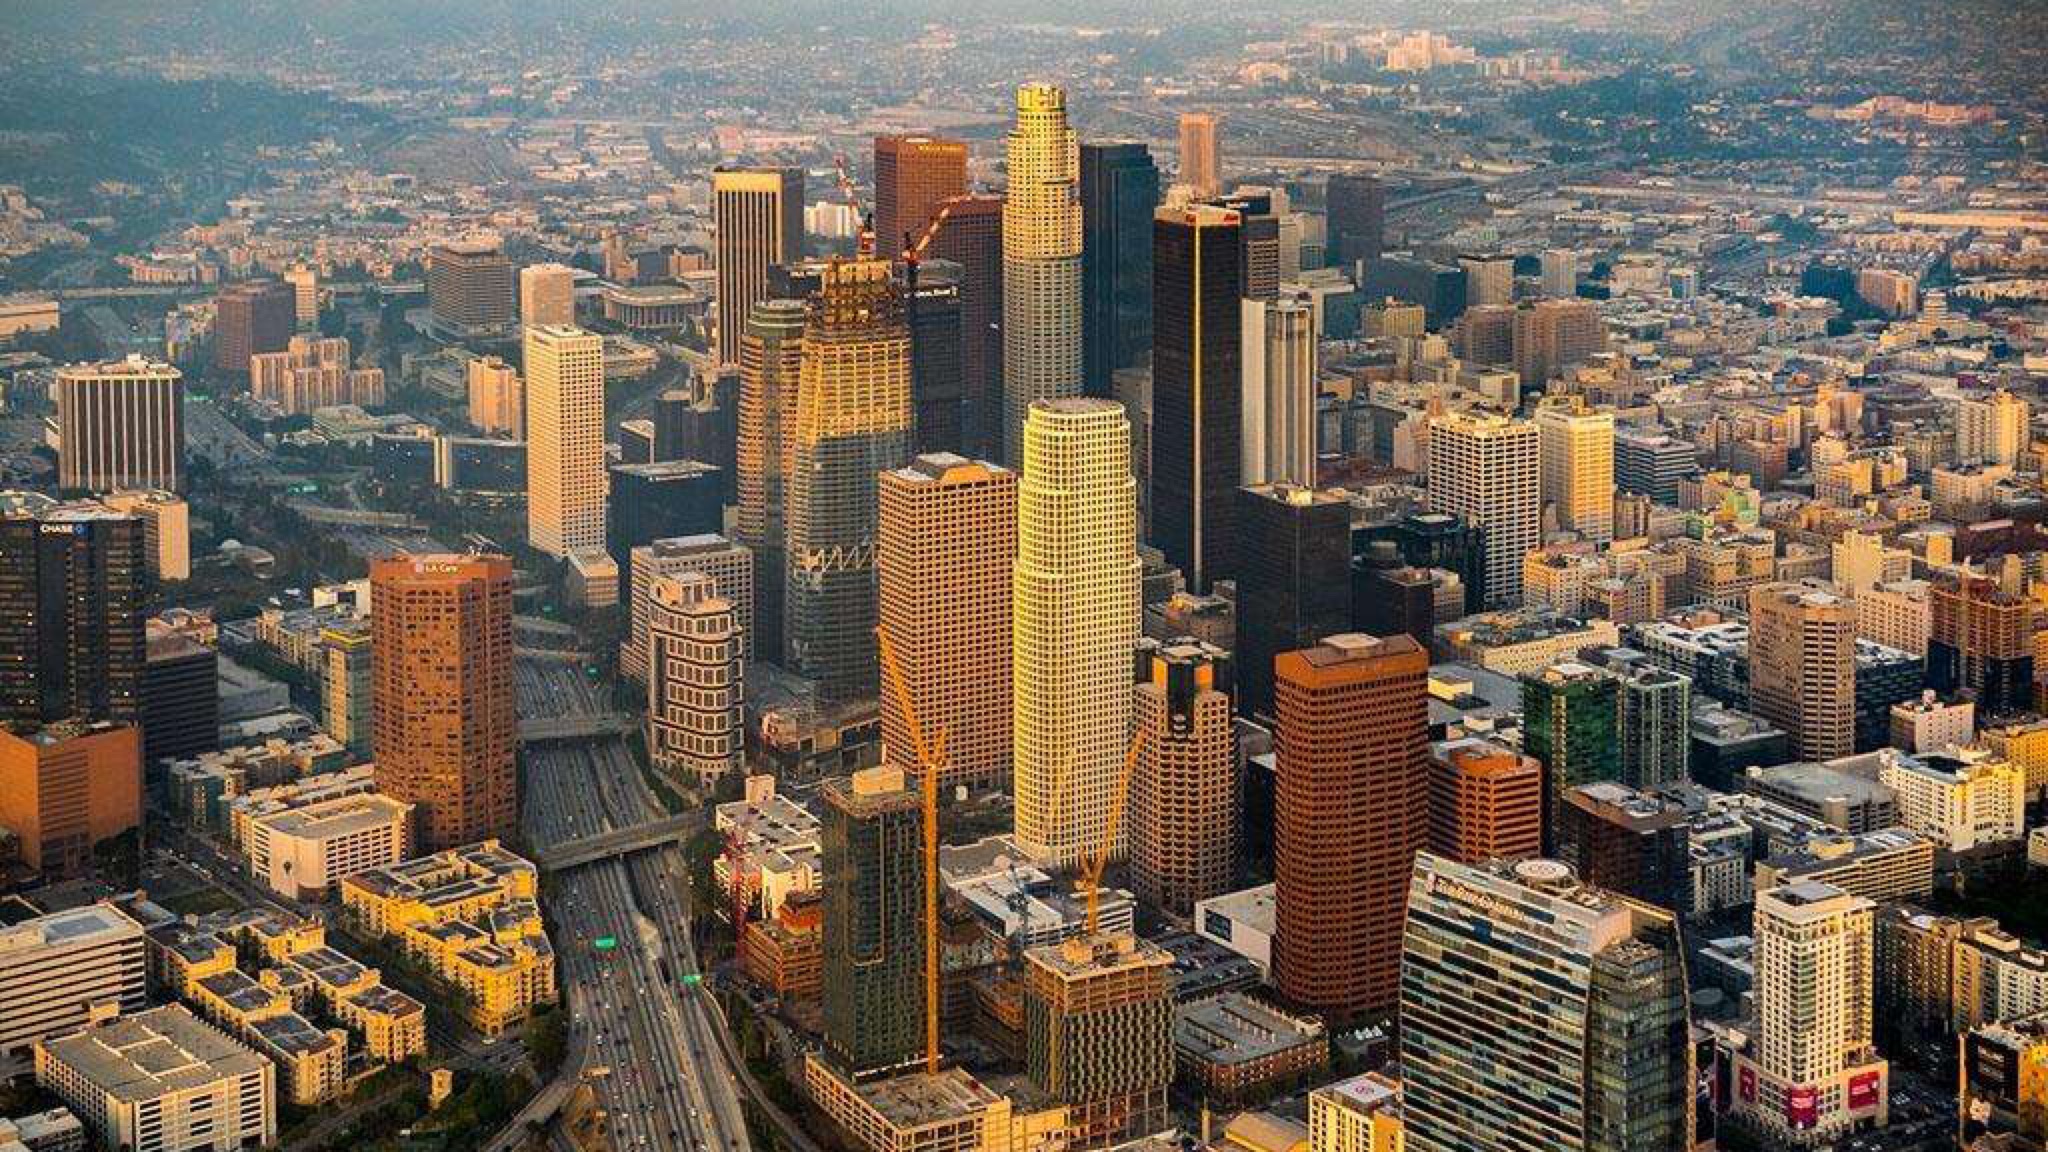 【航拍】 洛杉矶 gdp7531亿美元 人口397万 城市天际线|延时摄影